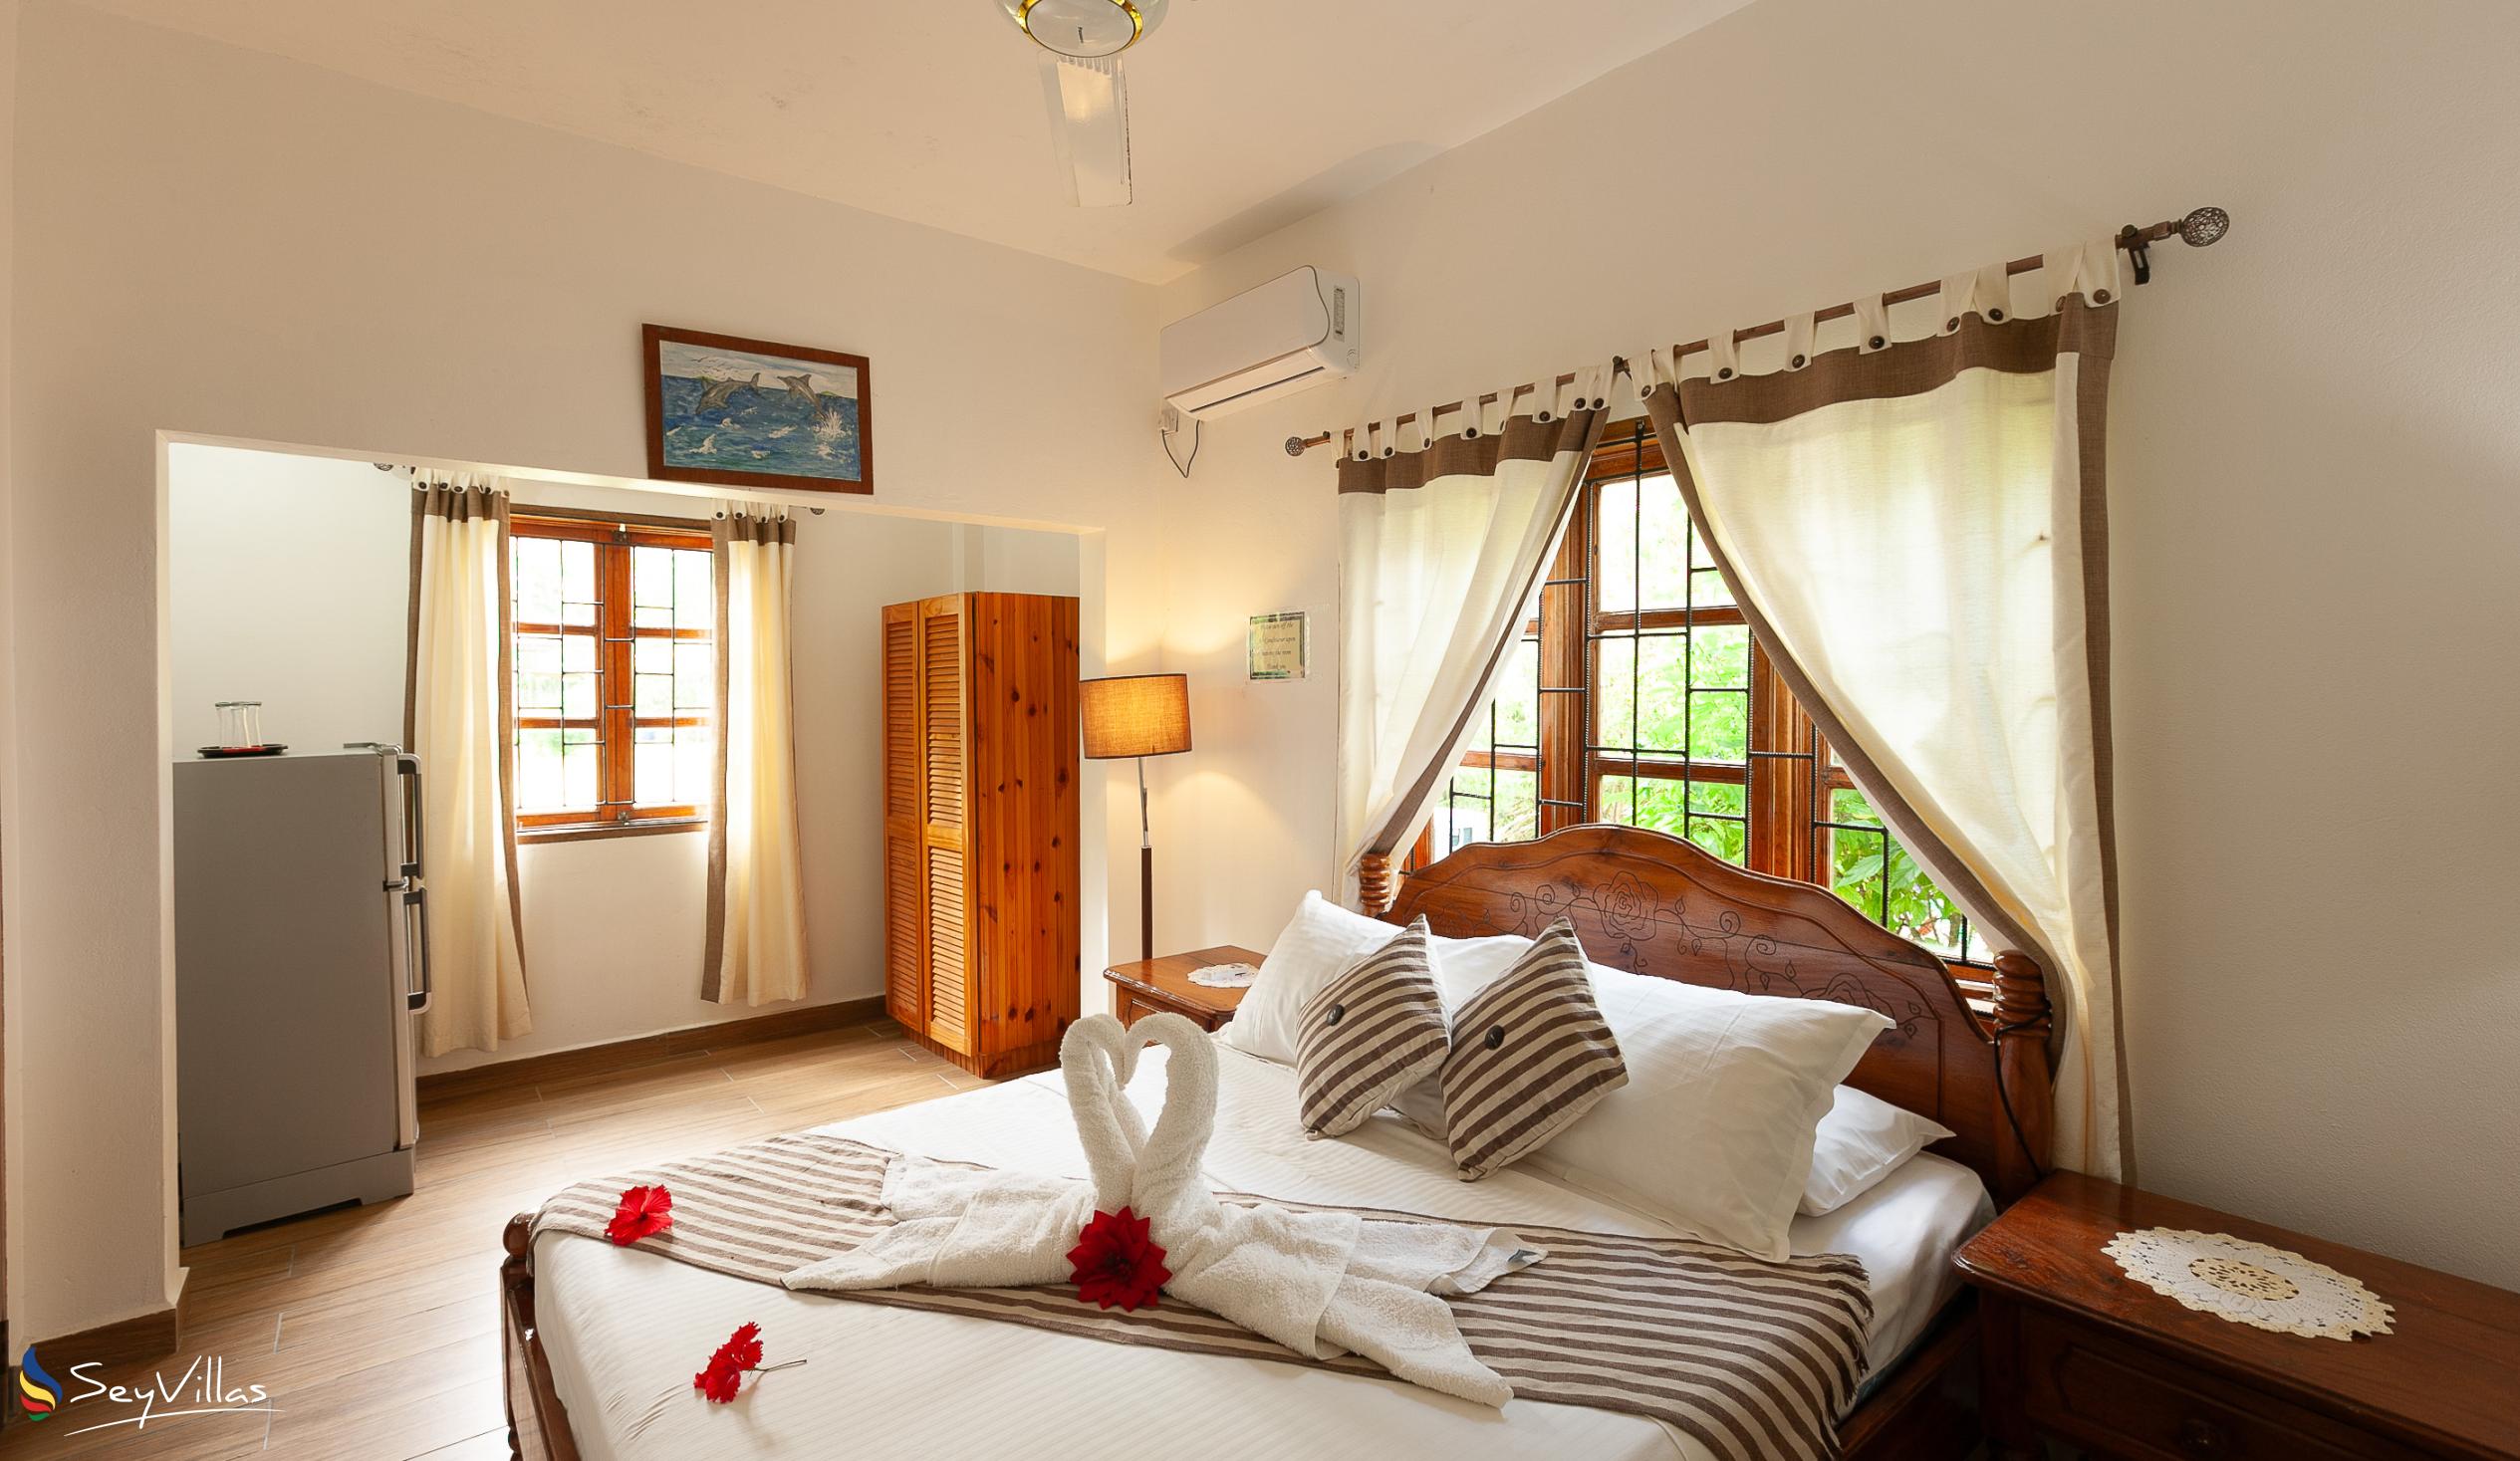 Foto 74: Tannette's Villa - Camera Matrimoniale Standard - La Digue (Seychelles)